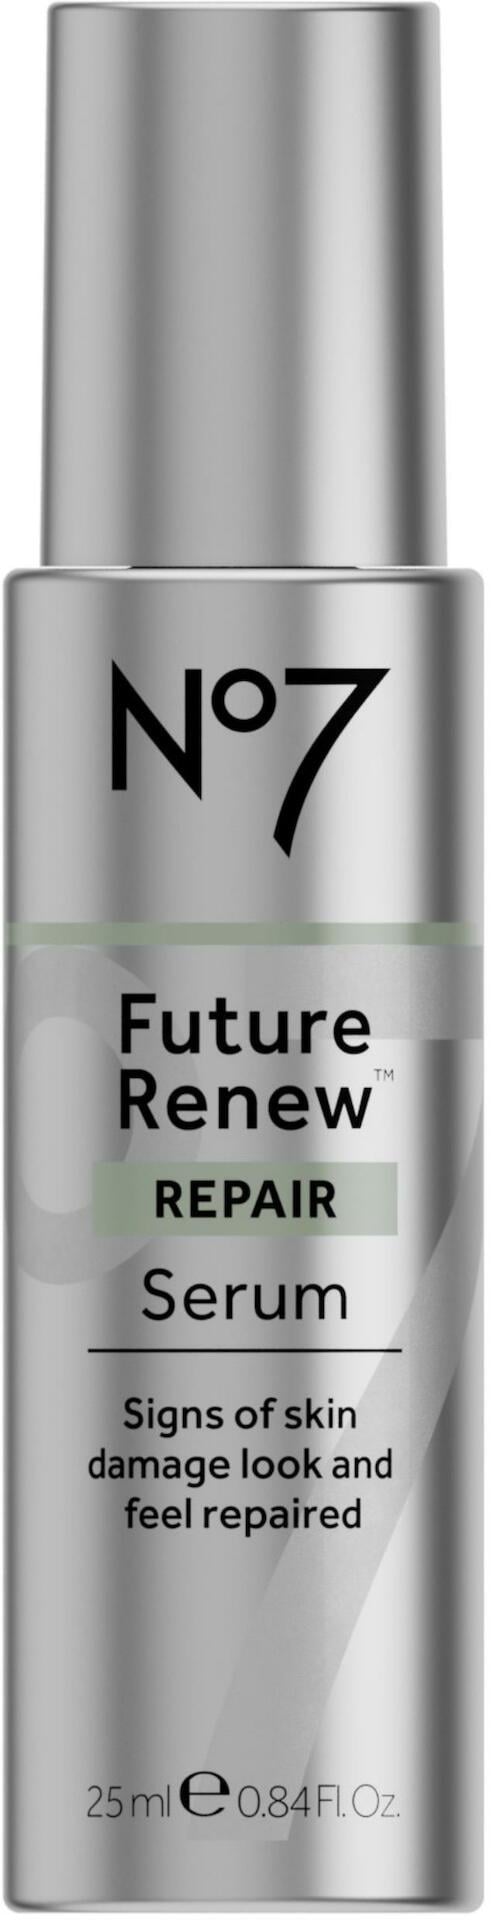 No7 Future Renew Repair Serum 25ml